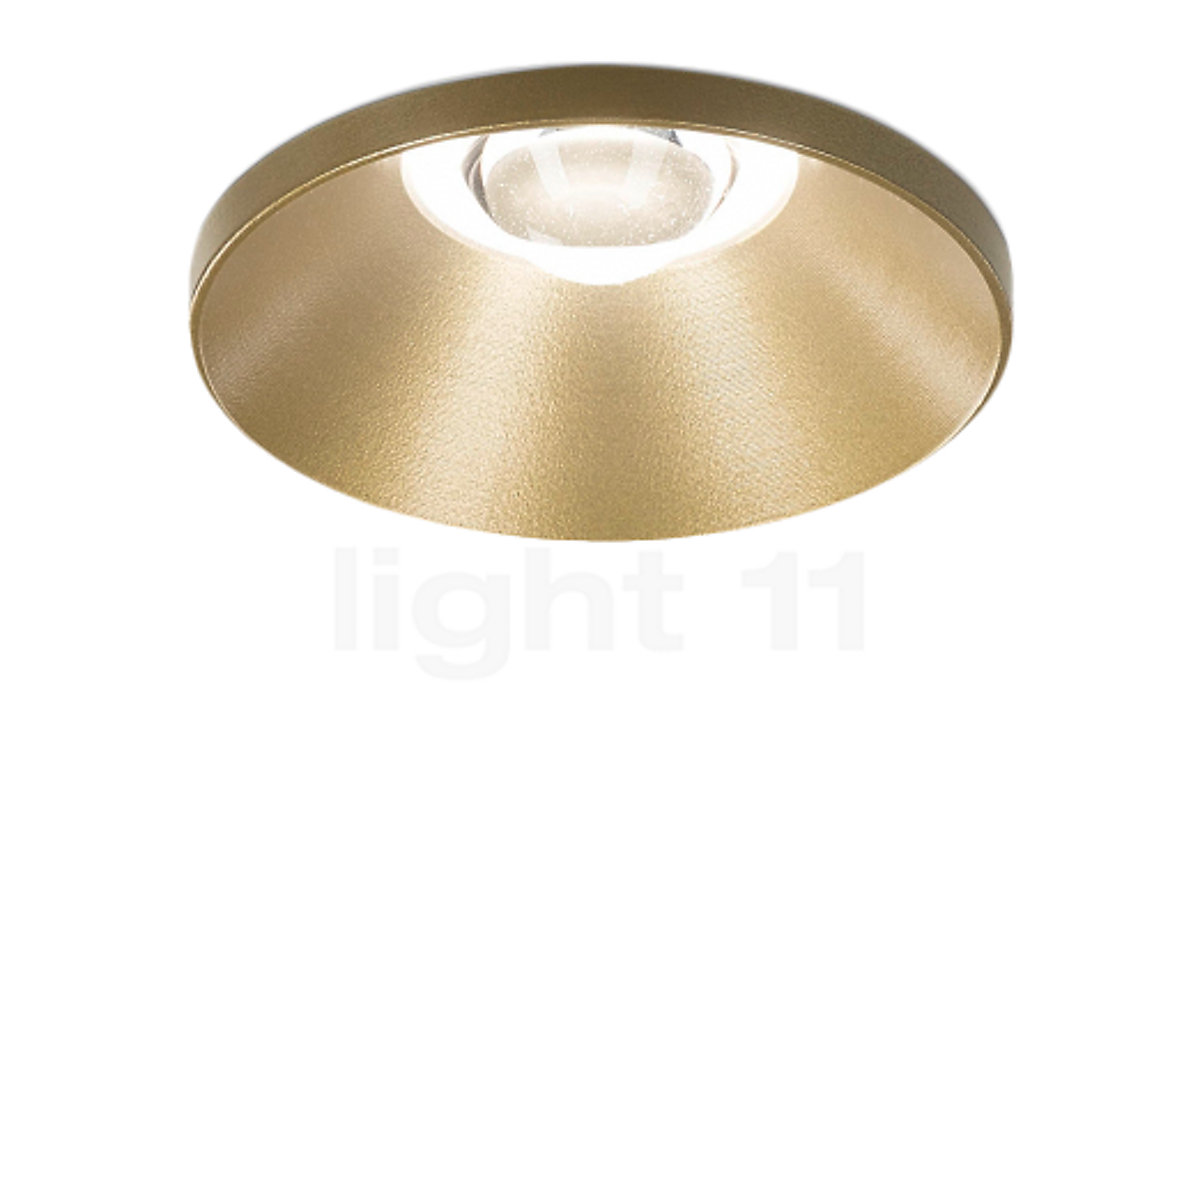 Forbipasserende grammatik Effektivitet Buy Delta Light Artuur recessed Ceiling Light LED at